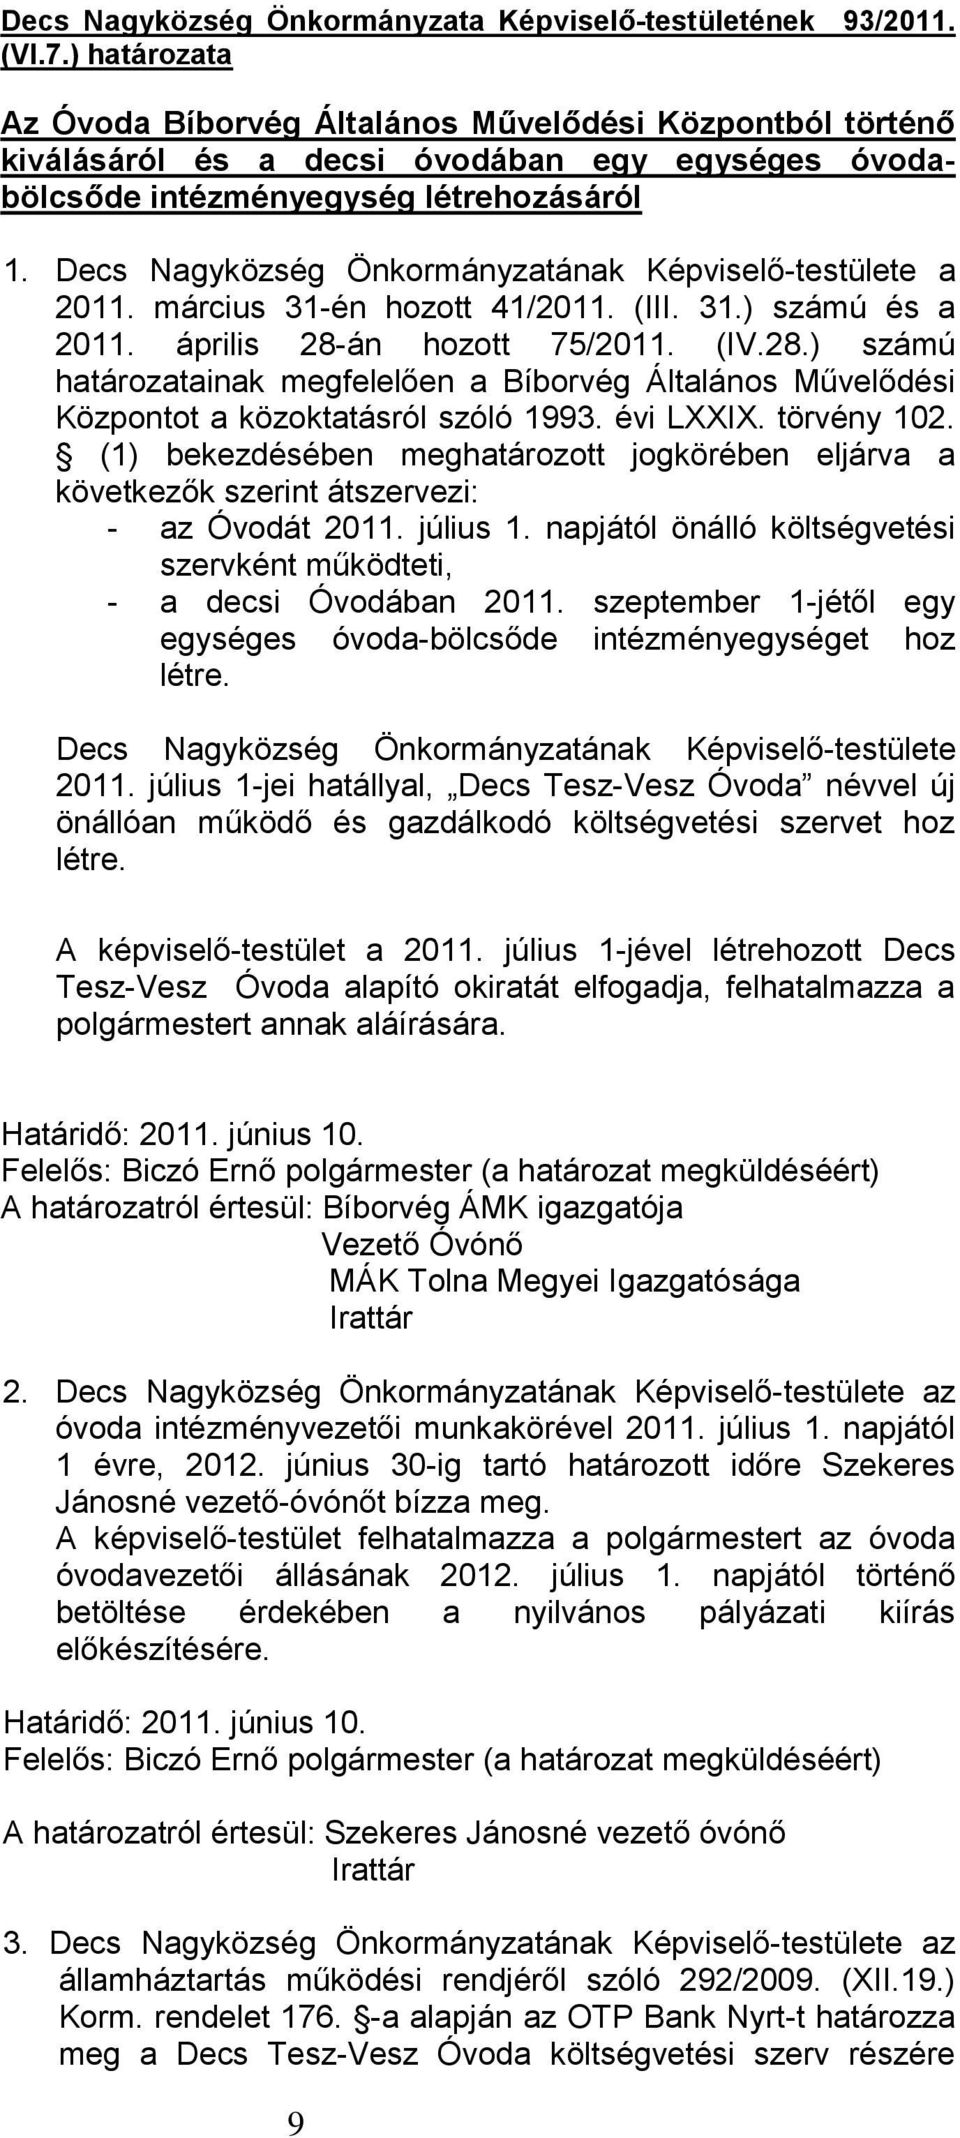 Decs Nagyközség Önkormányzatának Képviselő-testülete a 2011. március 31-én hozott 41/2011. (III. 31.) számú és a 2011. április 28-